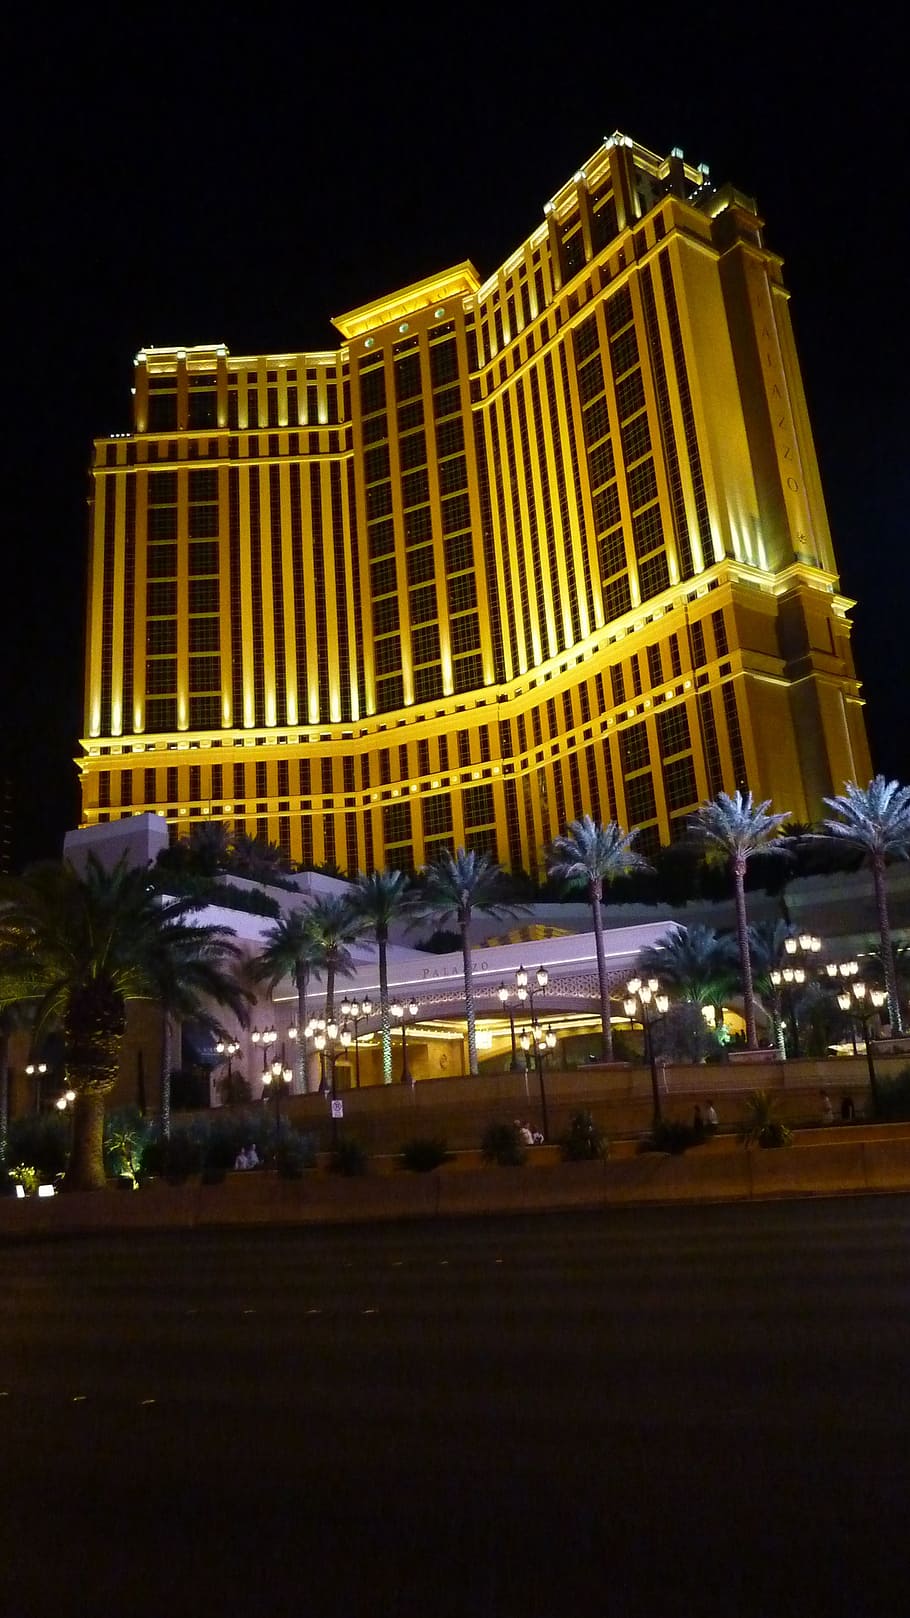 las vegas, city, holiday, america, night view, night, las Vegas - Nevada, the Strip, architecture, casino